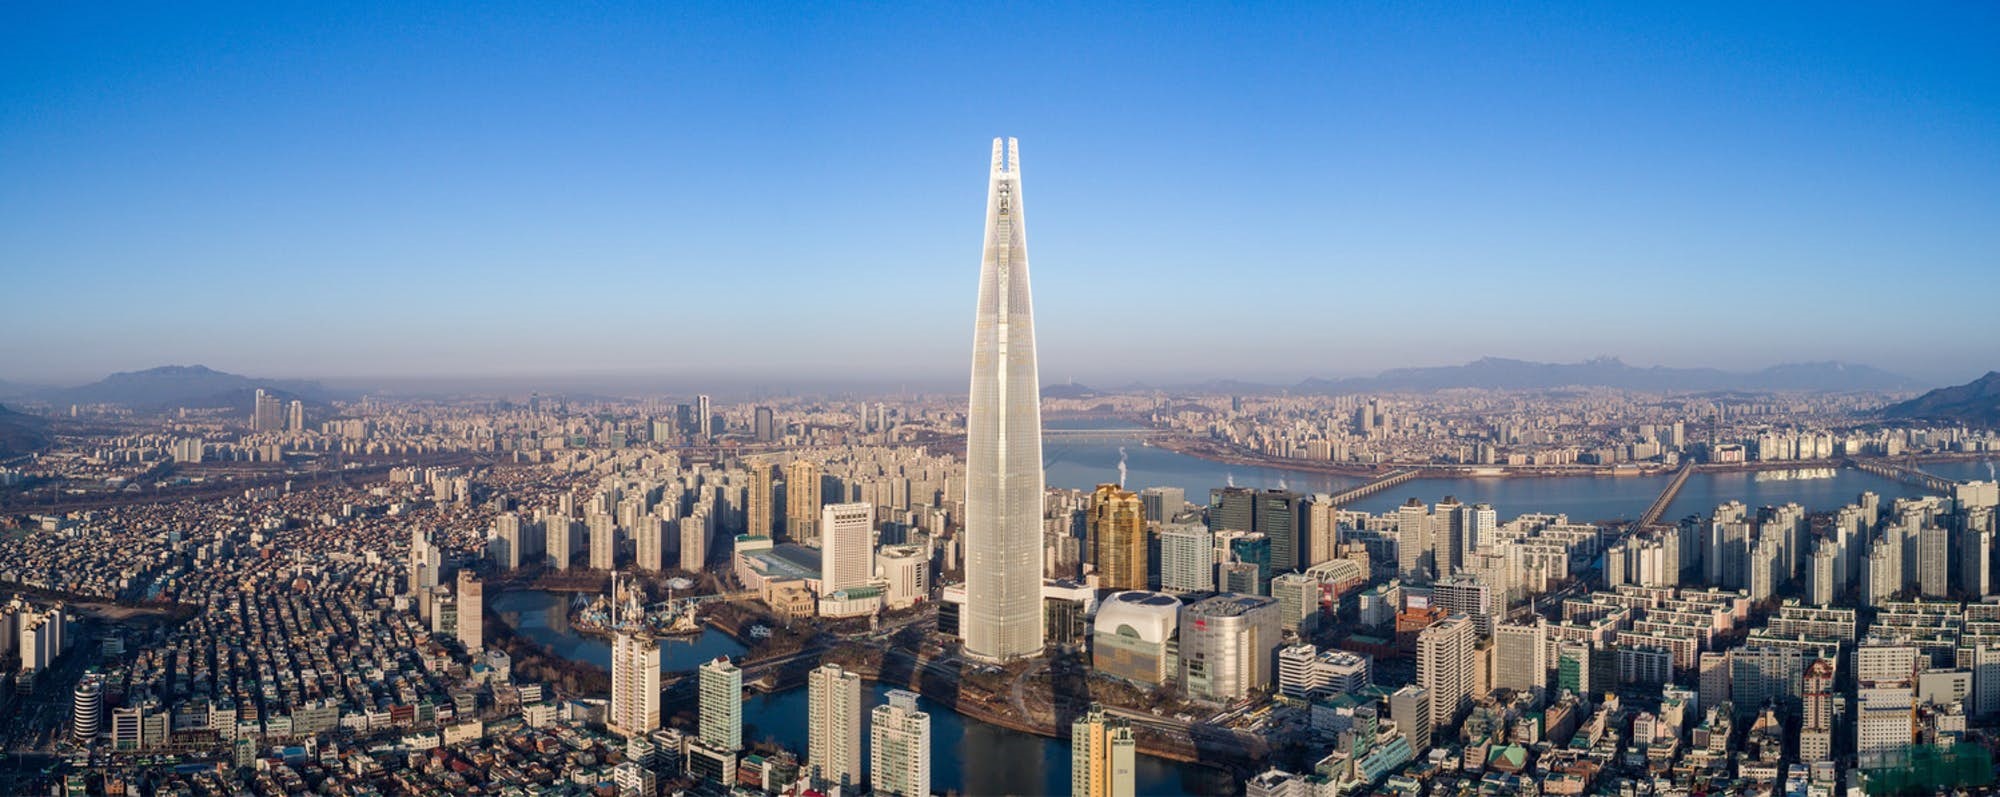 سریع‌ترین آسانسور جهان در کره‌جنوبی/ رسیدن به طبقه ۱۲۳در کمتر از یک دقیقه 